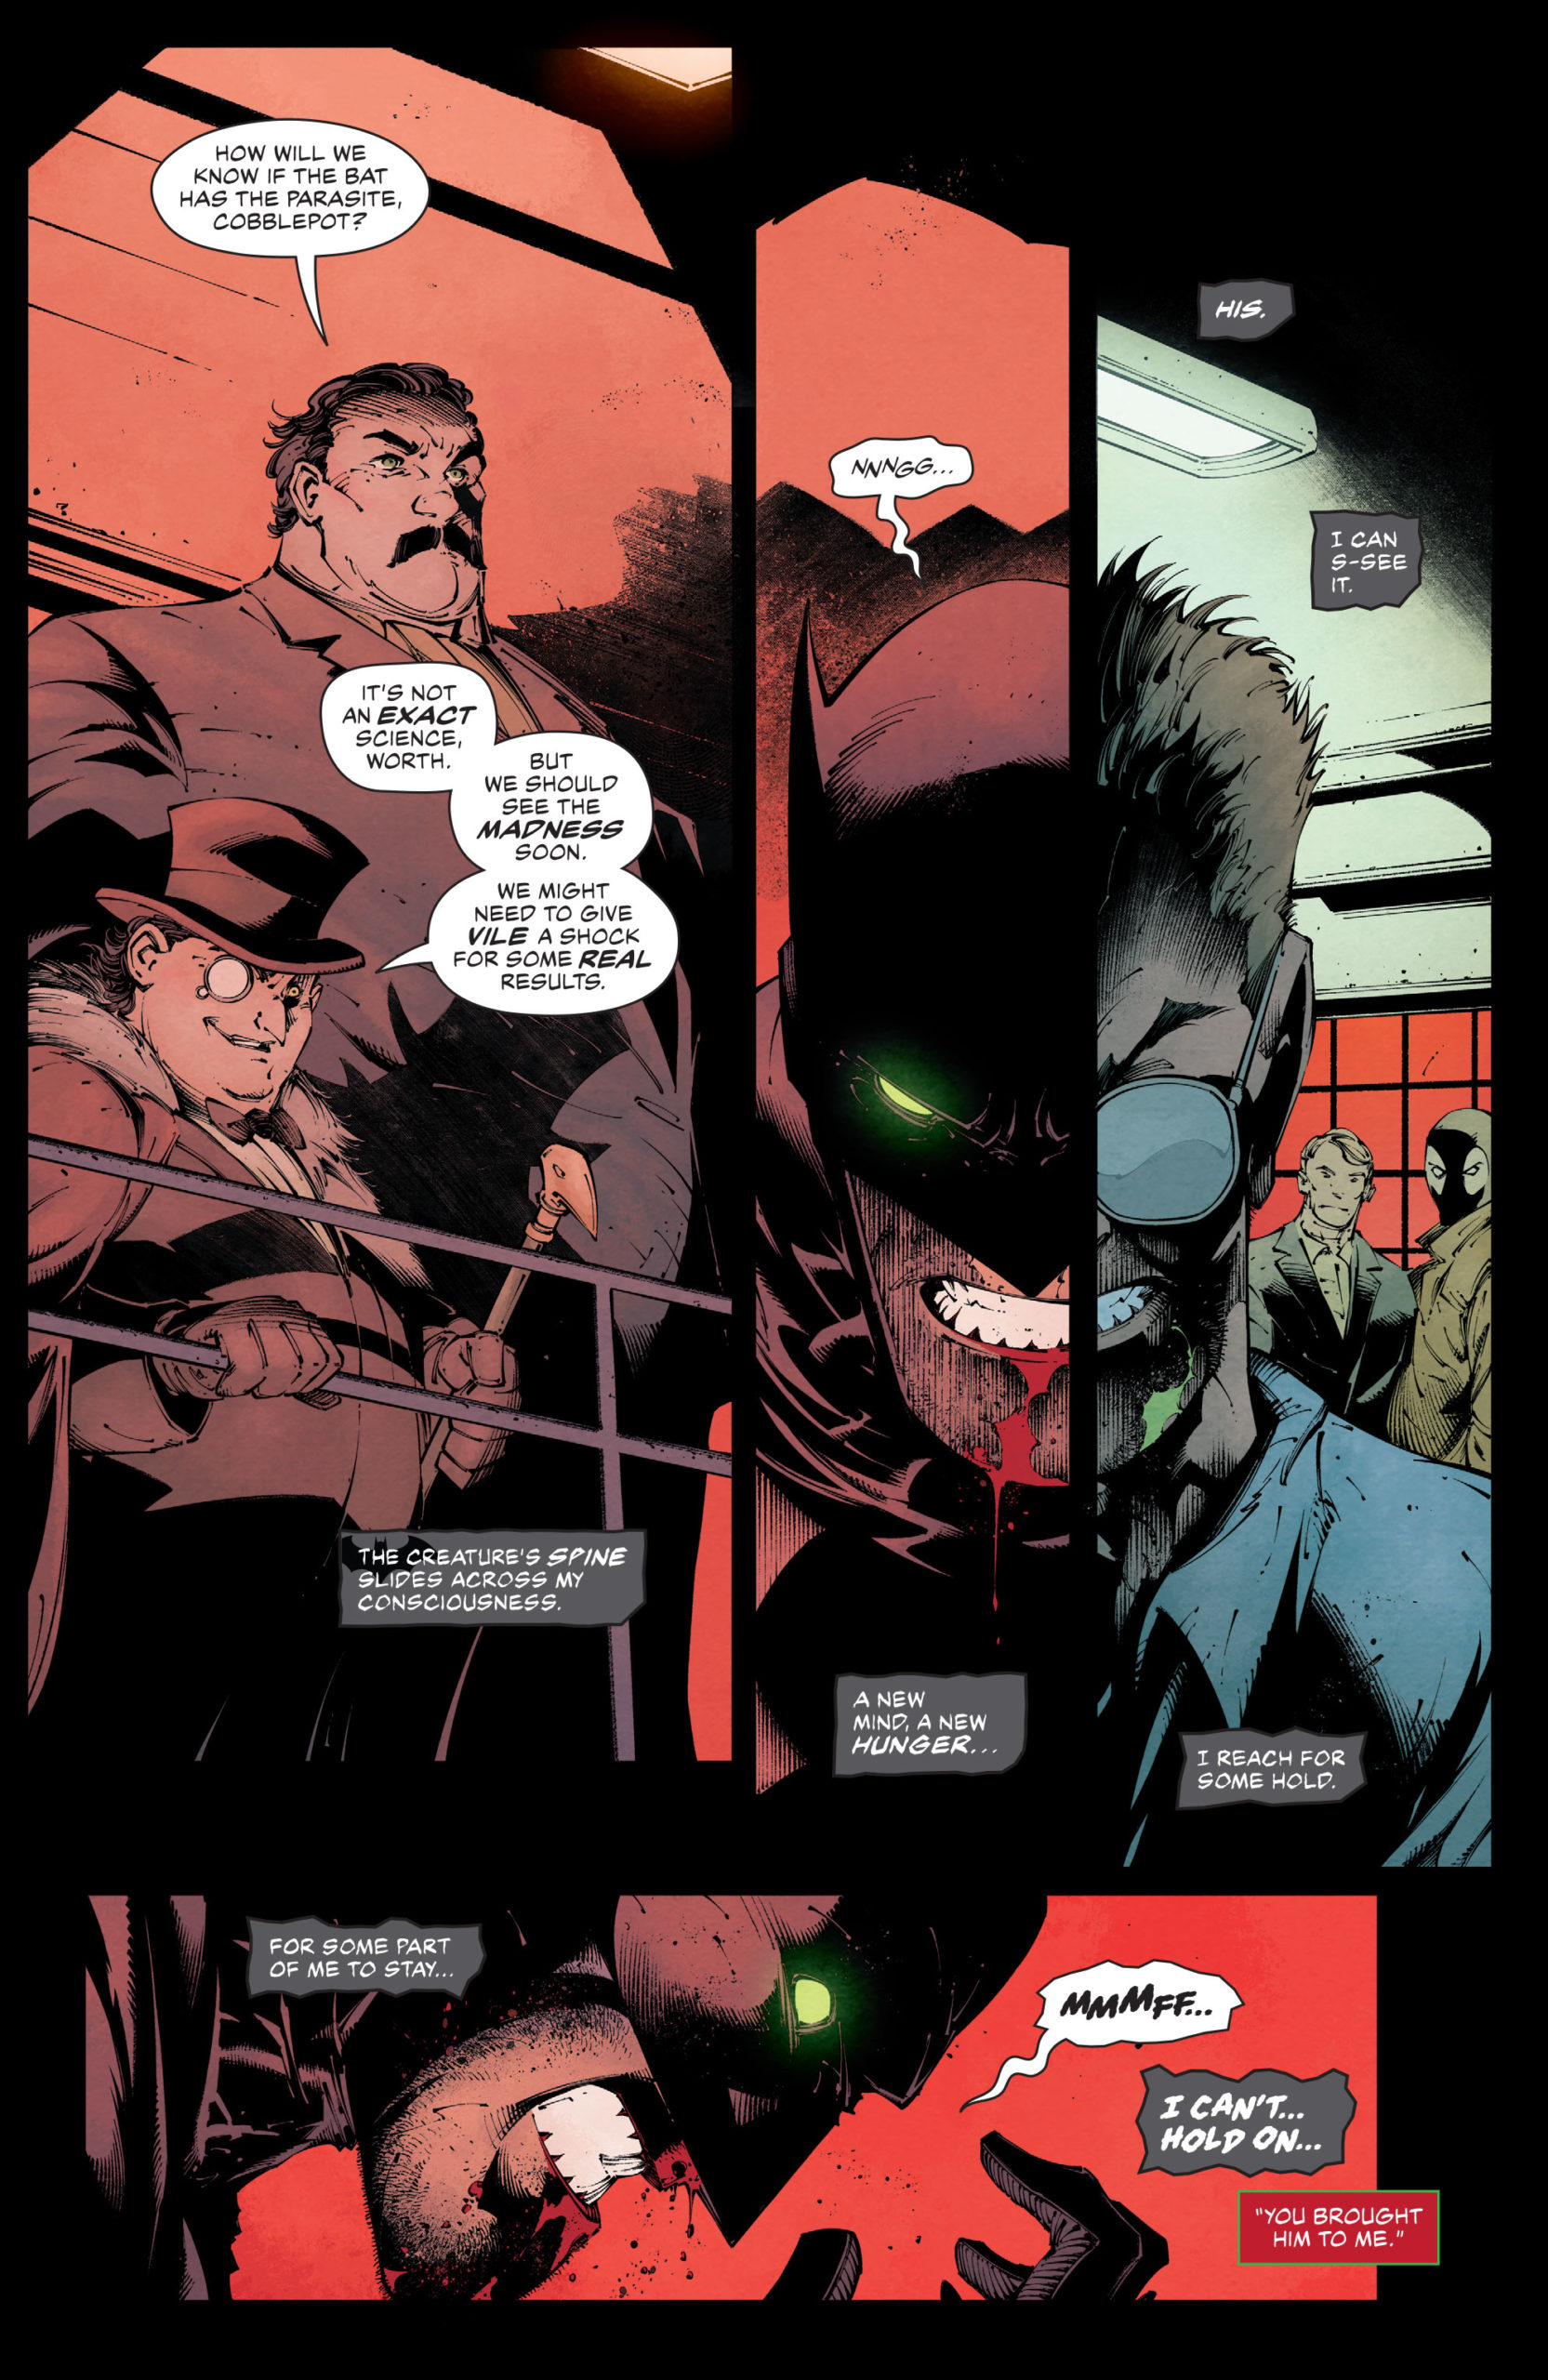 Detective Comics 1042 DC Comics News